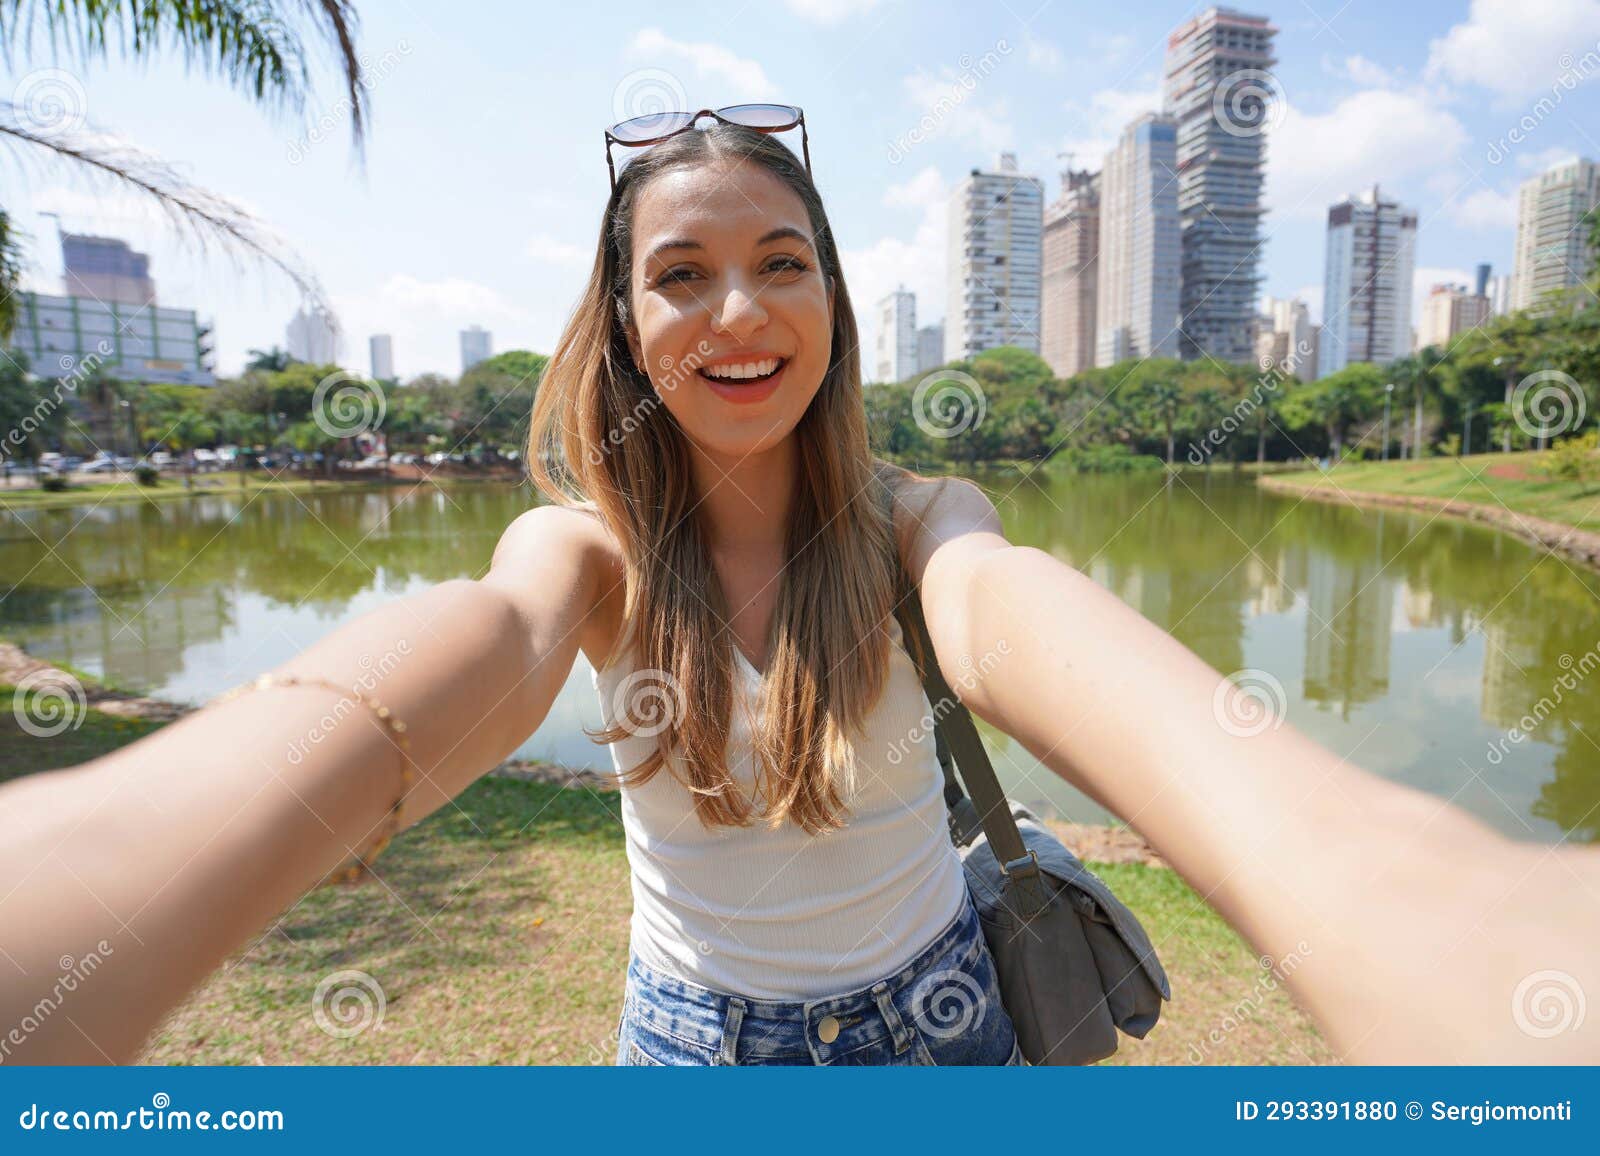 portrait of smiling brazilian girl takes selfie in vaca brava park in goiania, goias, brazil